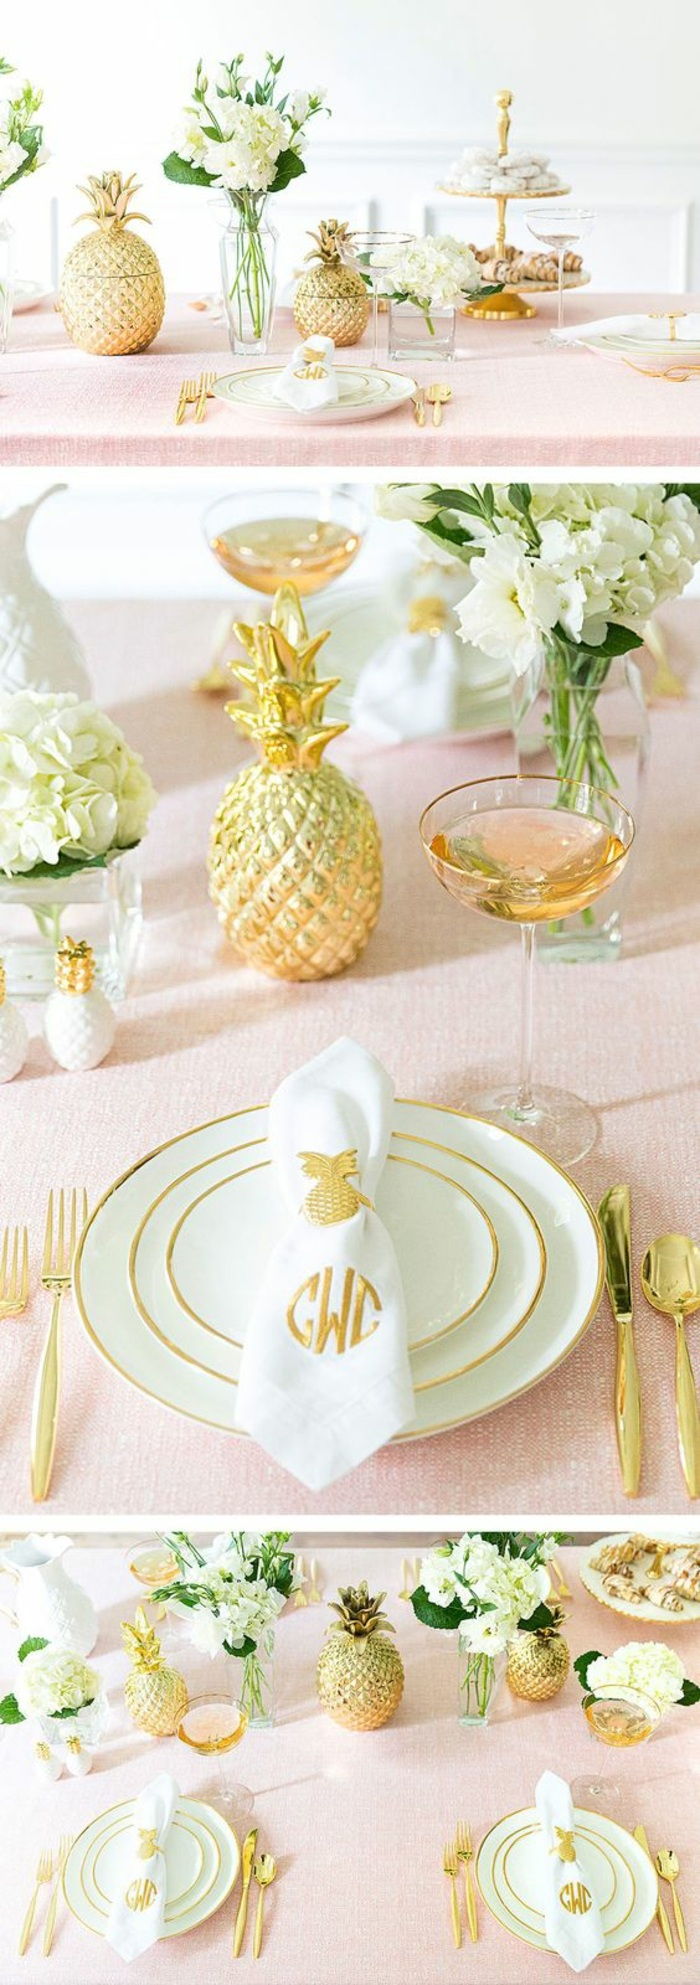 slávnostné dekorácie stolov, stolová dekorácia v ružovej, bielej a zlatej, ananás, zlaté príbory